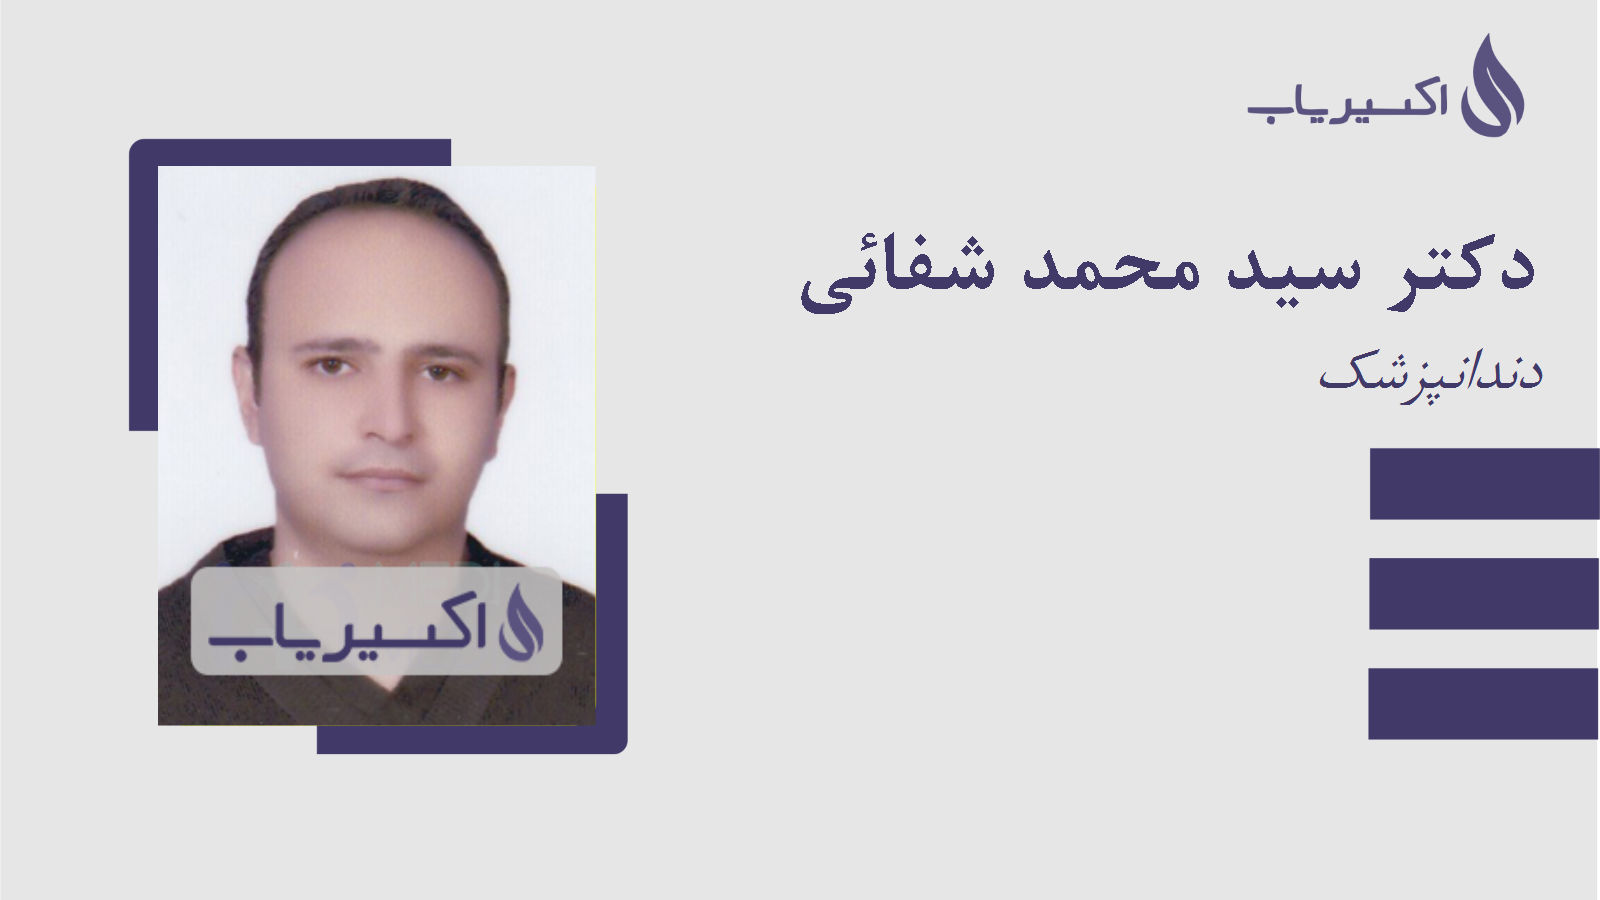 مطب دکتر سید محمد شفائی